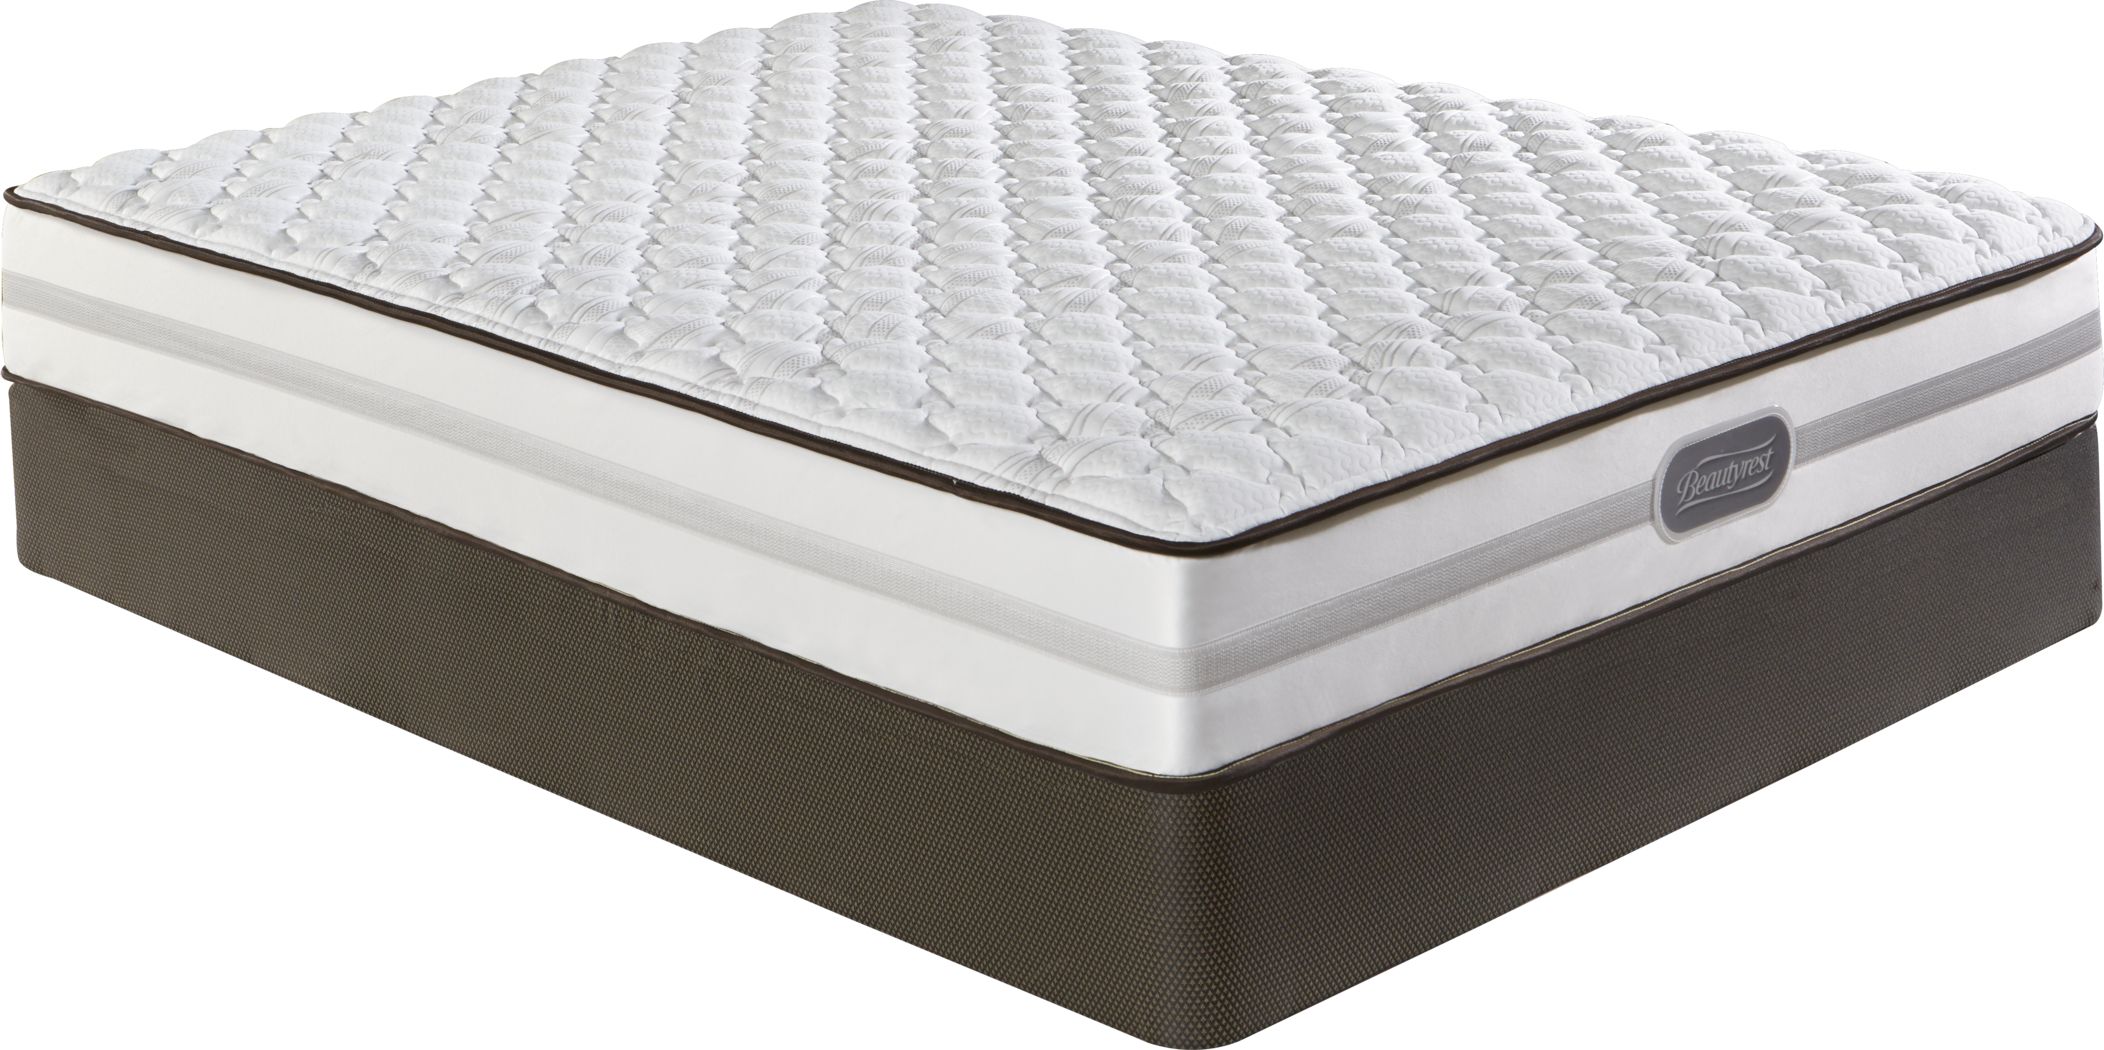 beautyrest queen mattress set